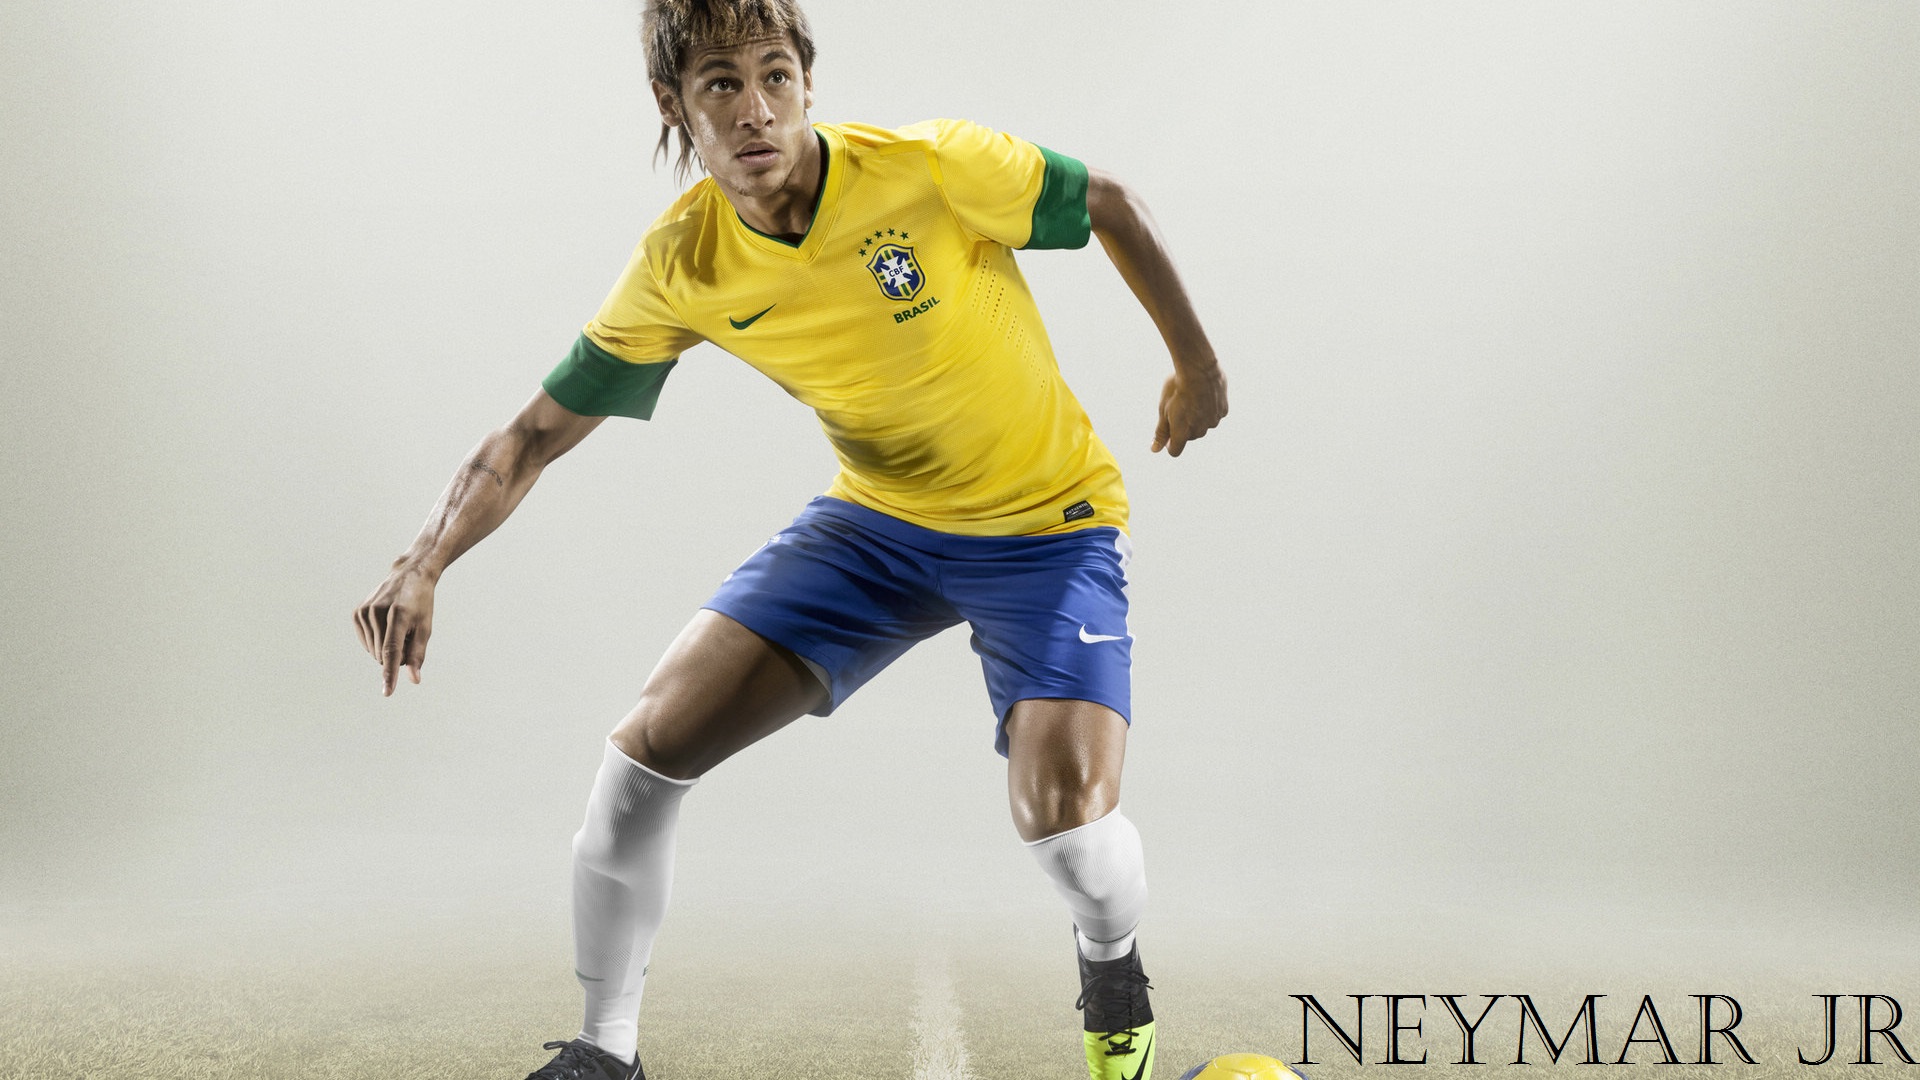 New Neymar Wallpaper HD 2017 Free Download